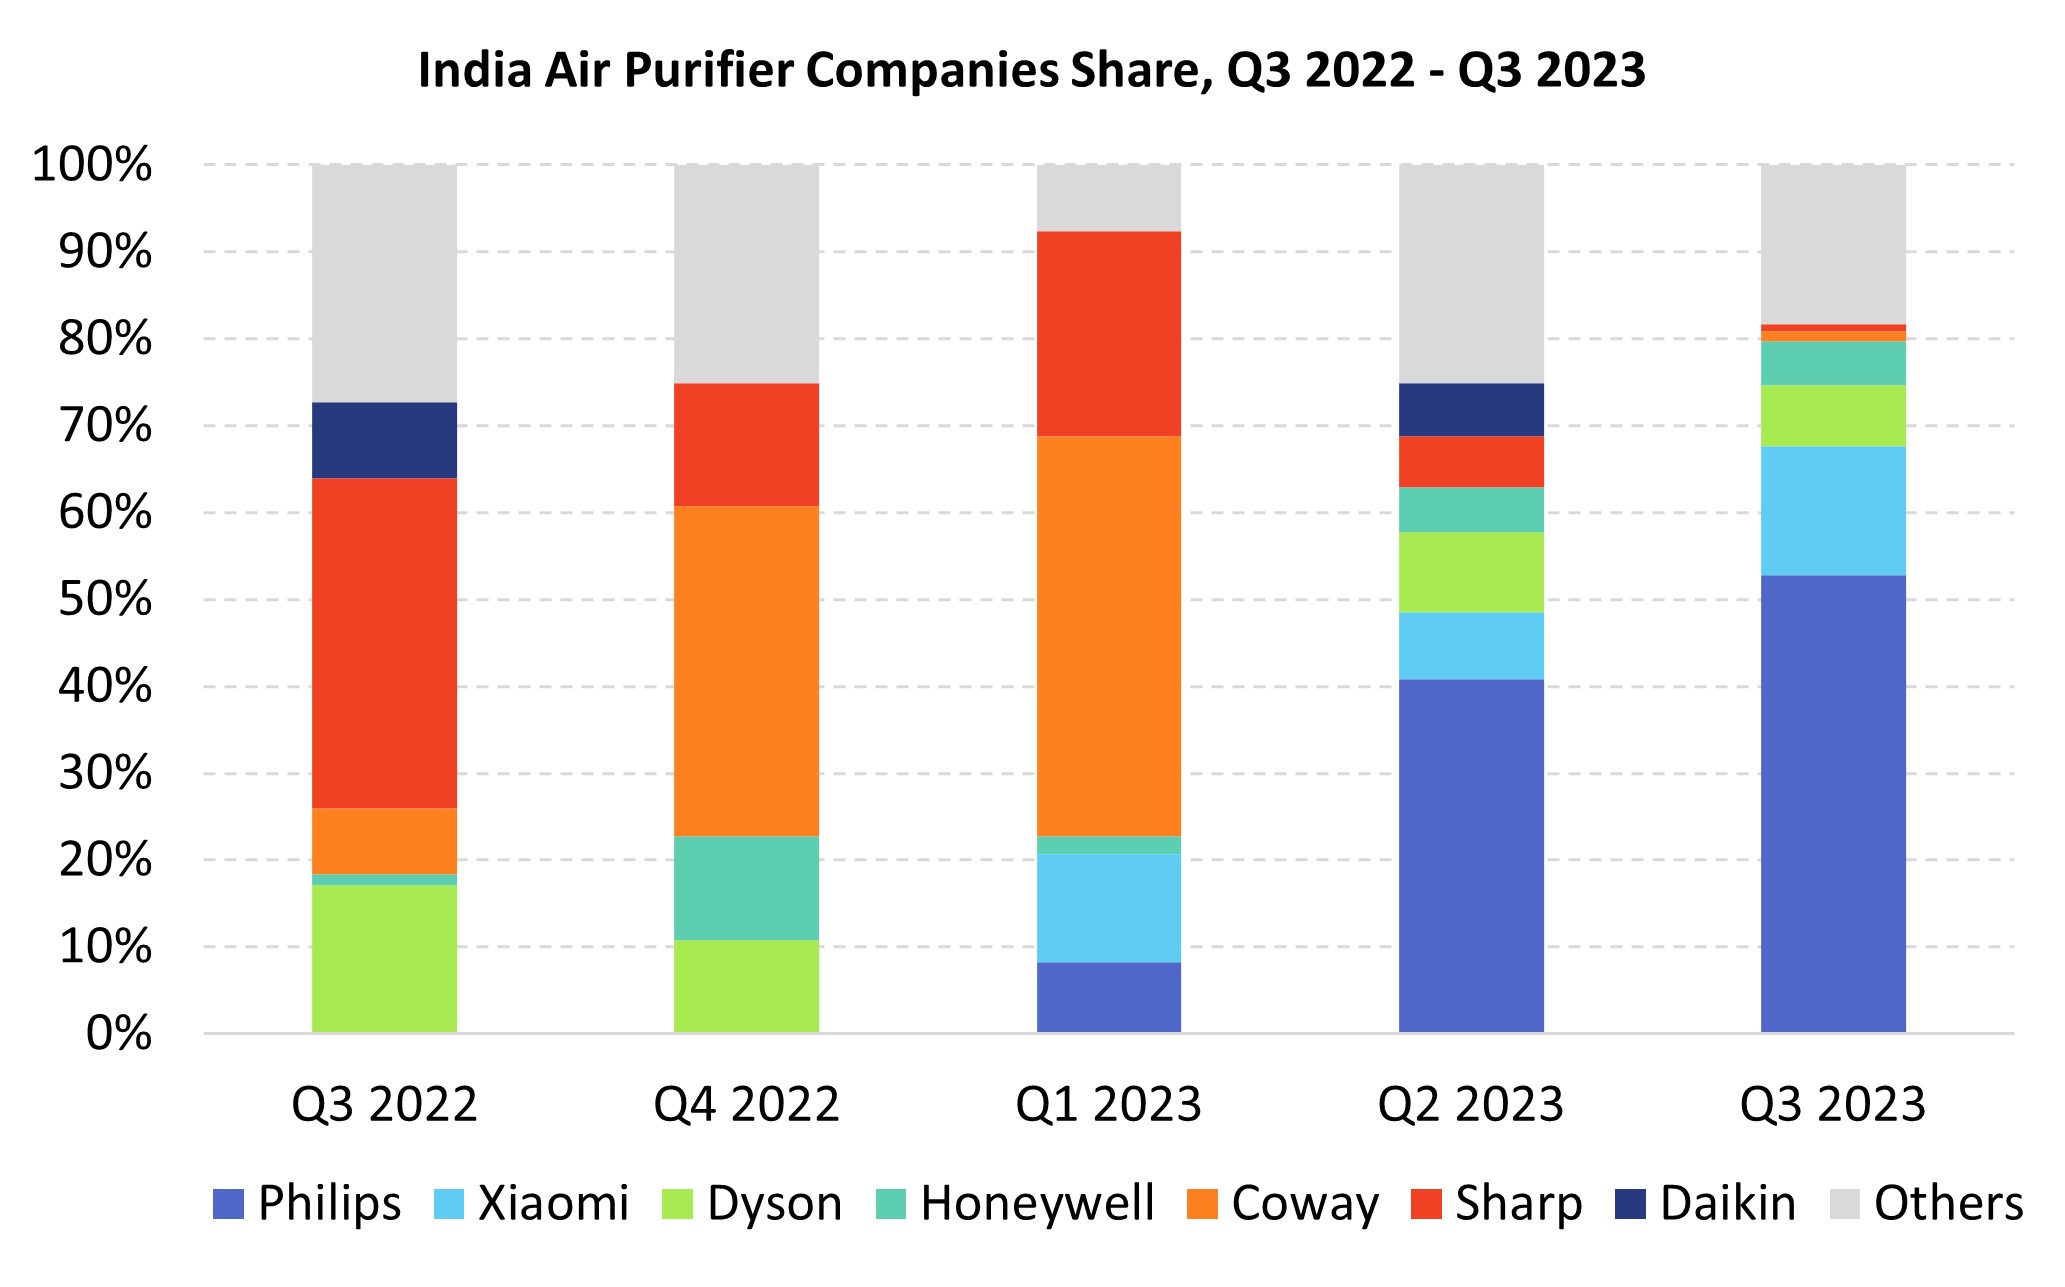 India Air Purifier Companies Share, Q3 2022 - Q3 2023